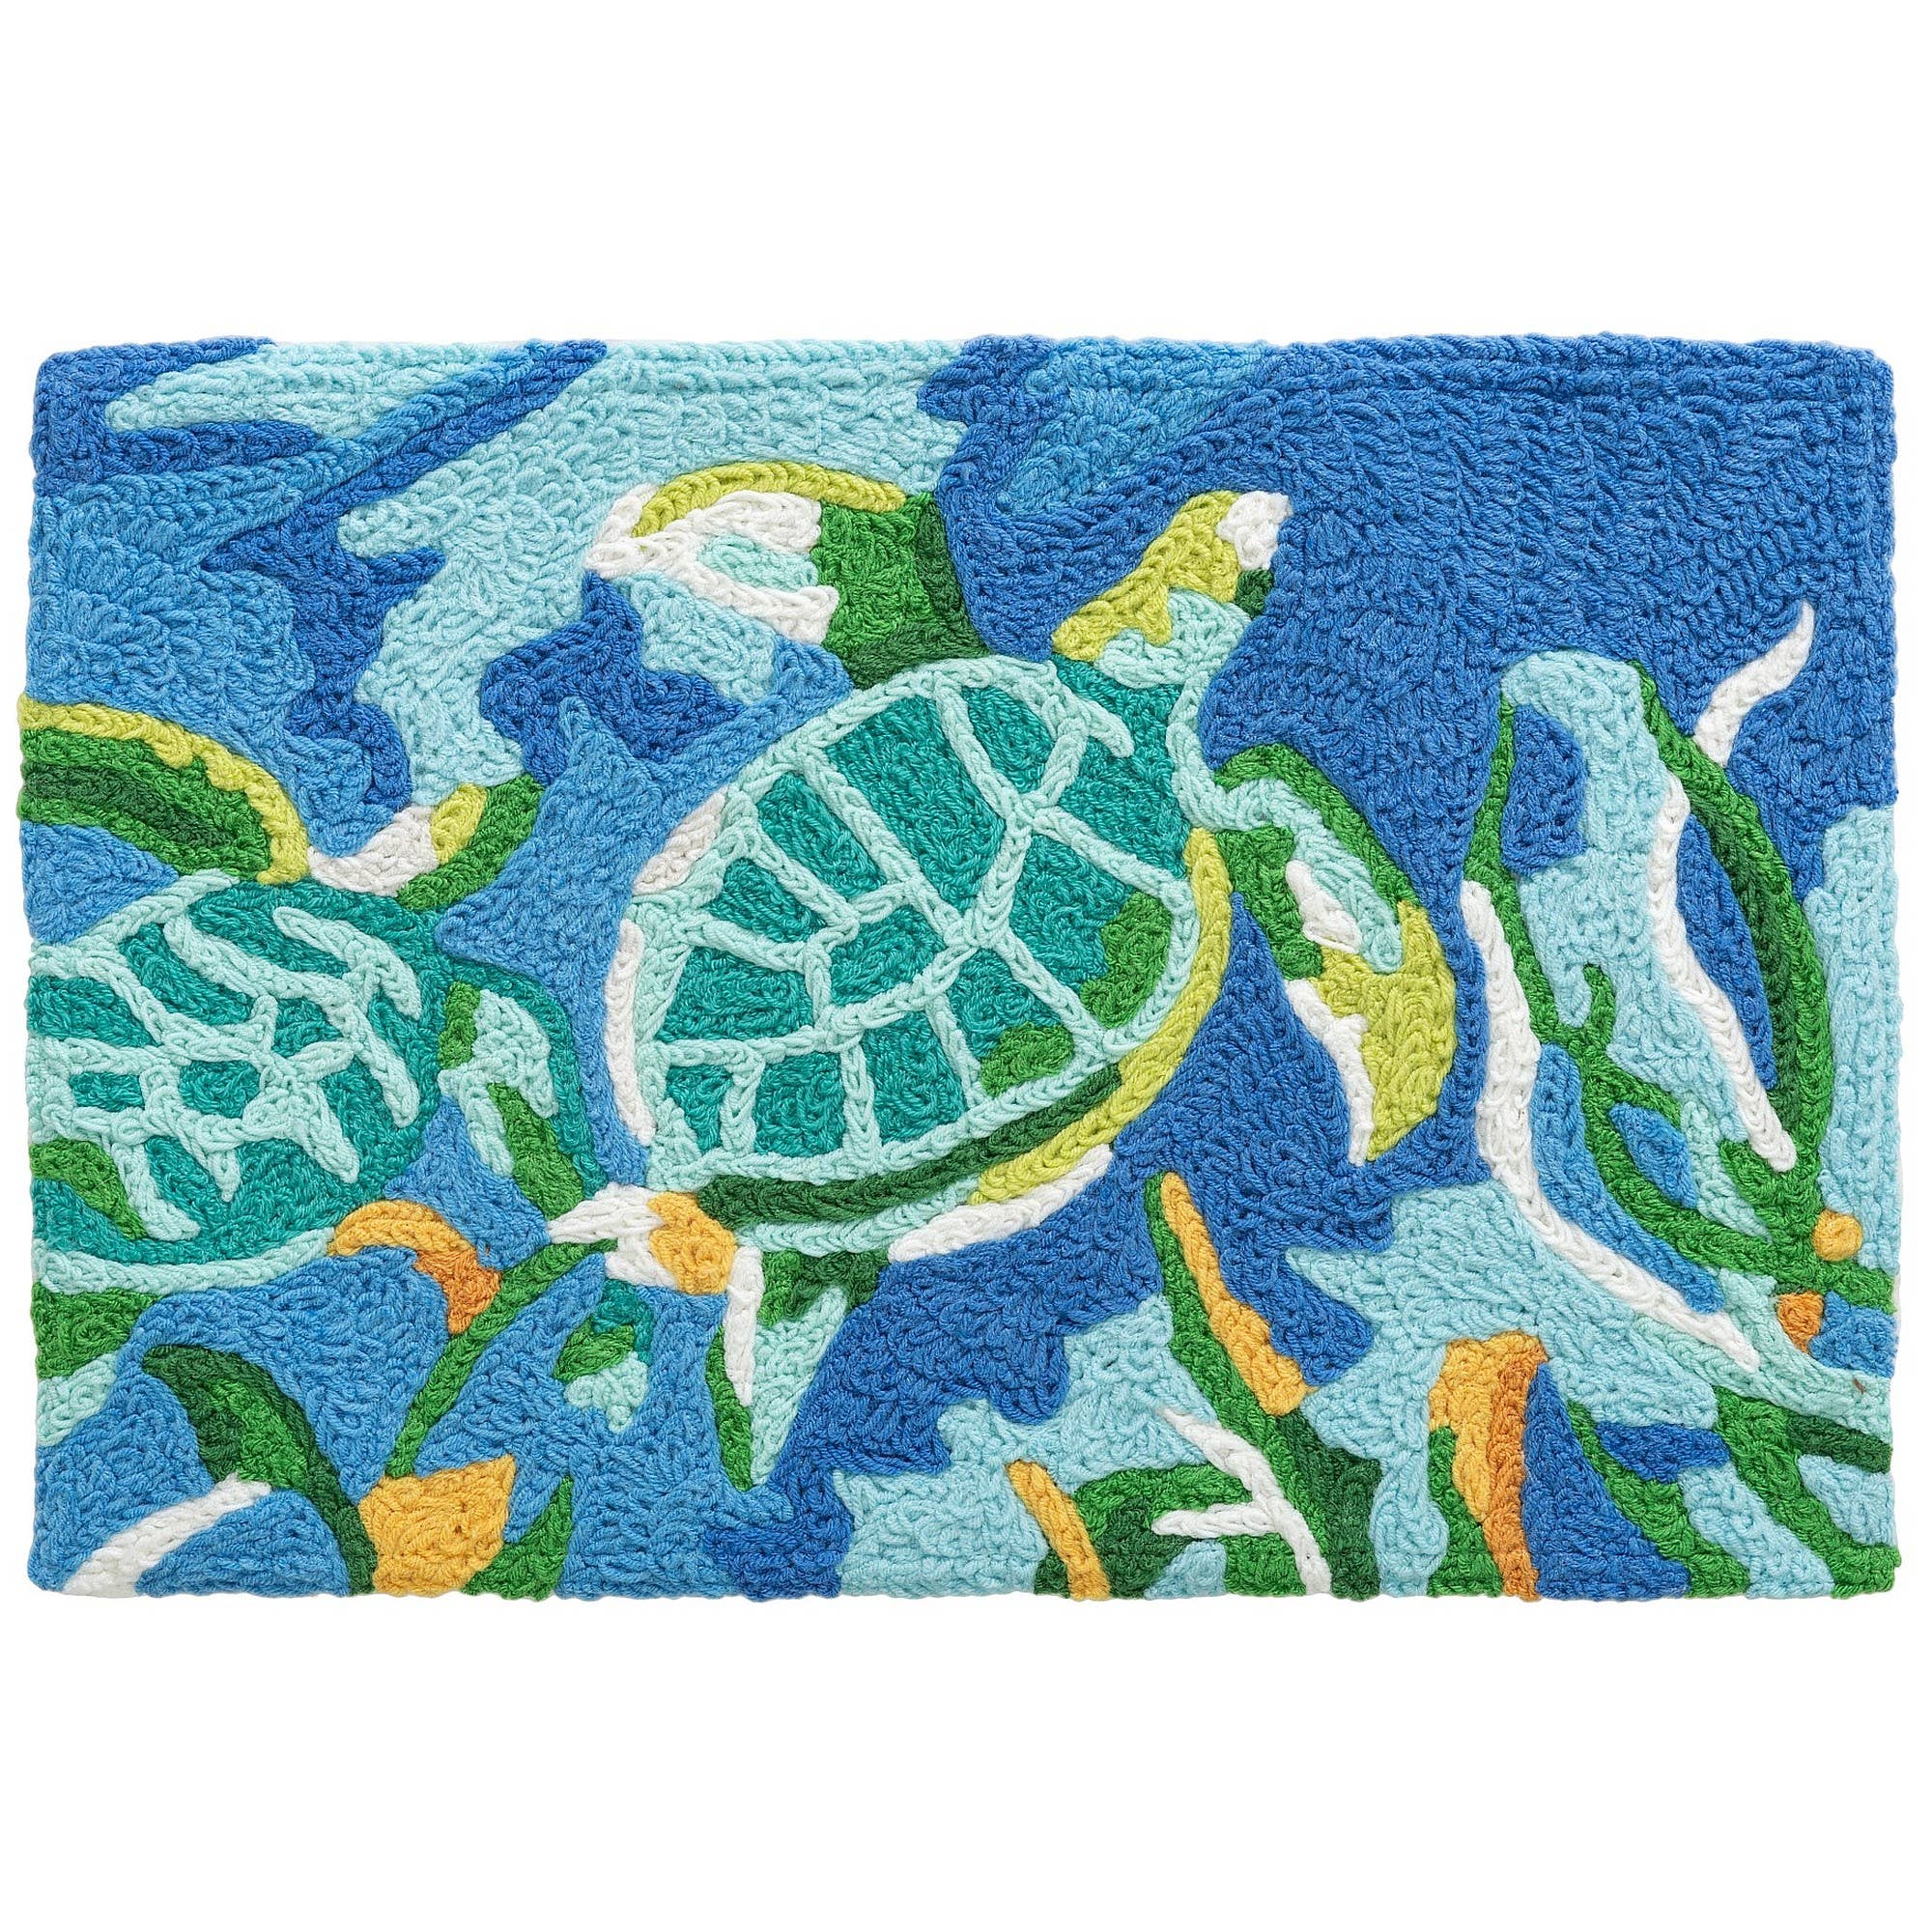 20" x 30" Turtles Swimming in Seaweed Rug